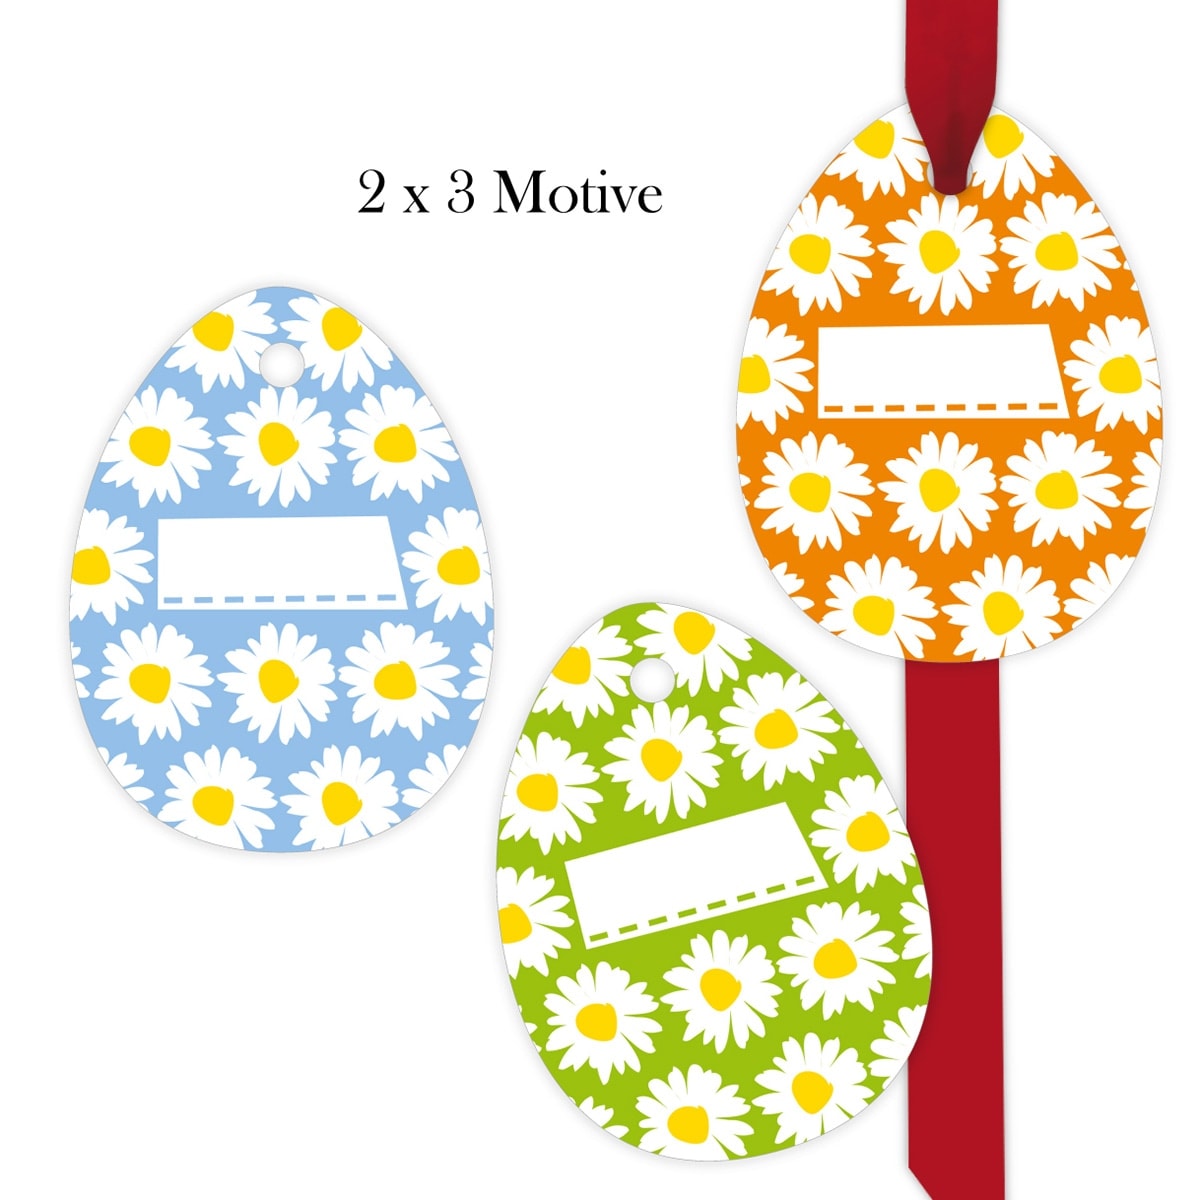 Kartenkaufrausch: 6 Blumen Geschenkanhänger aus unserer florale Papeterie in multicolor